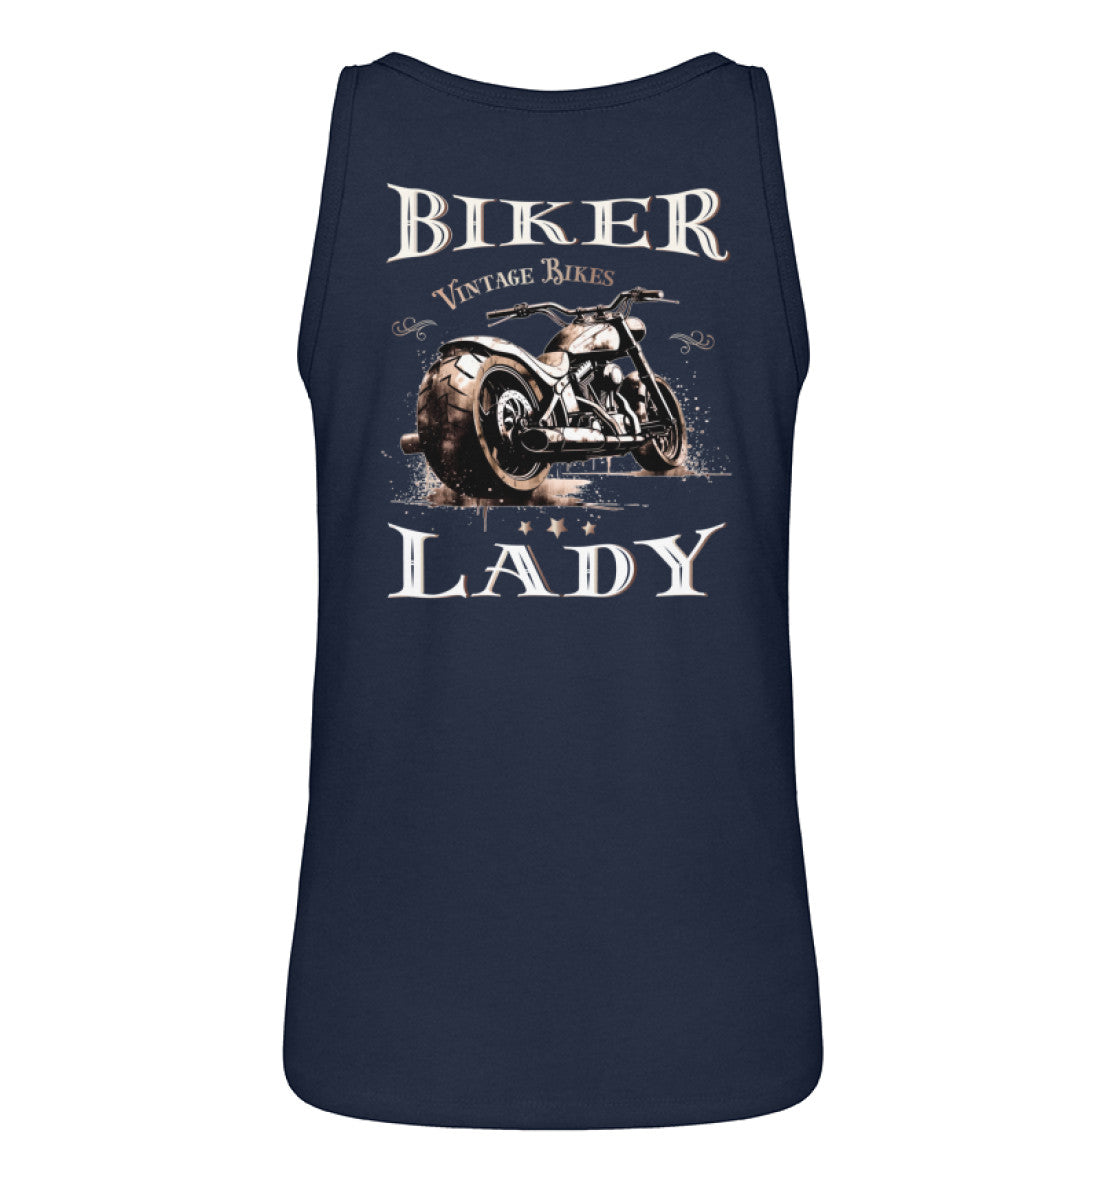 Ein Tanktop für Motorradfahrerinnen von Wingbikers mit dem Aufdruck, Biker Lady - mit einer Chopper im vintage Stil, mit Back Print - in navy blau.